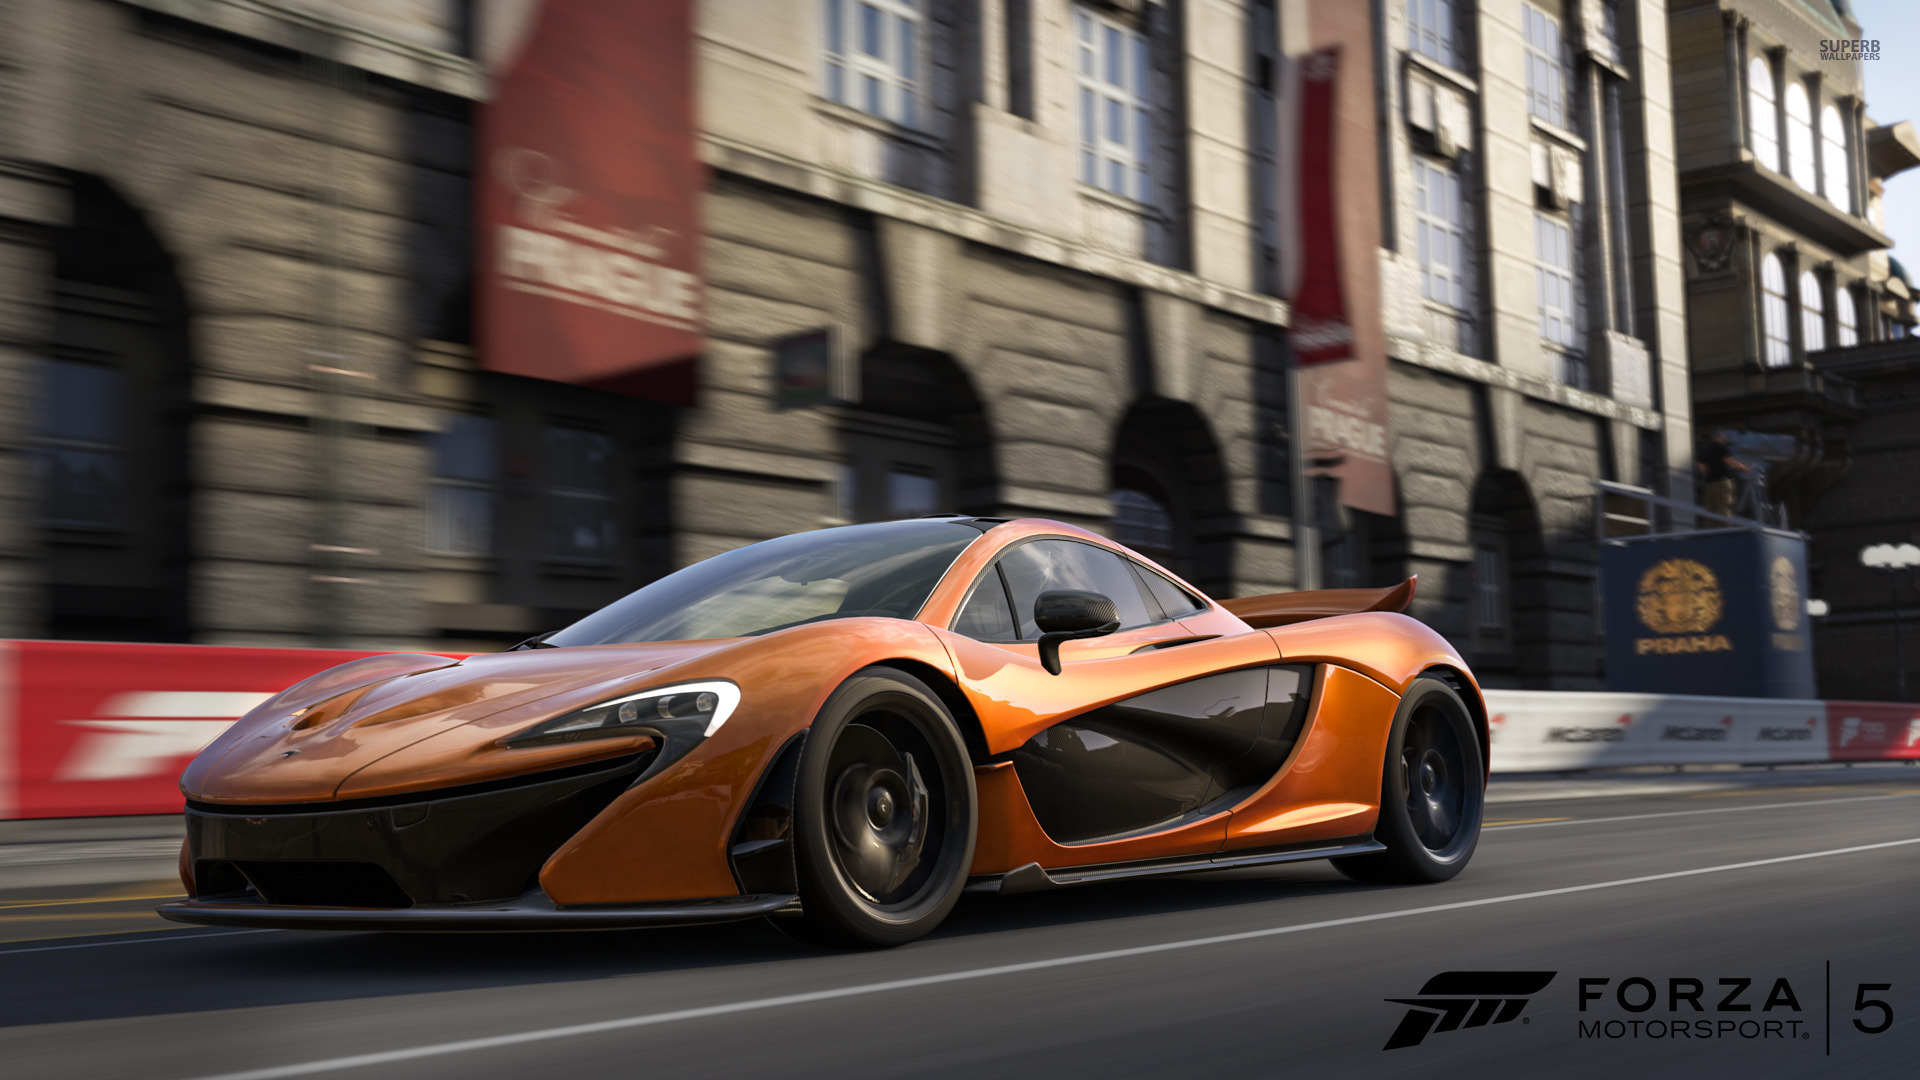 Téléchargez gratuitement l'image Jeux Vidéo, Forza Motorsport 5, Forza sur le bureau de votre PC